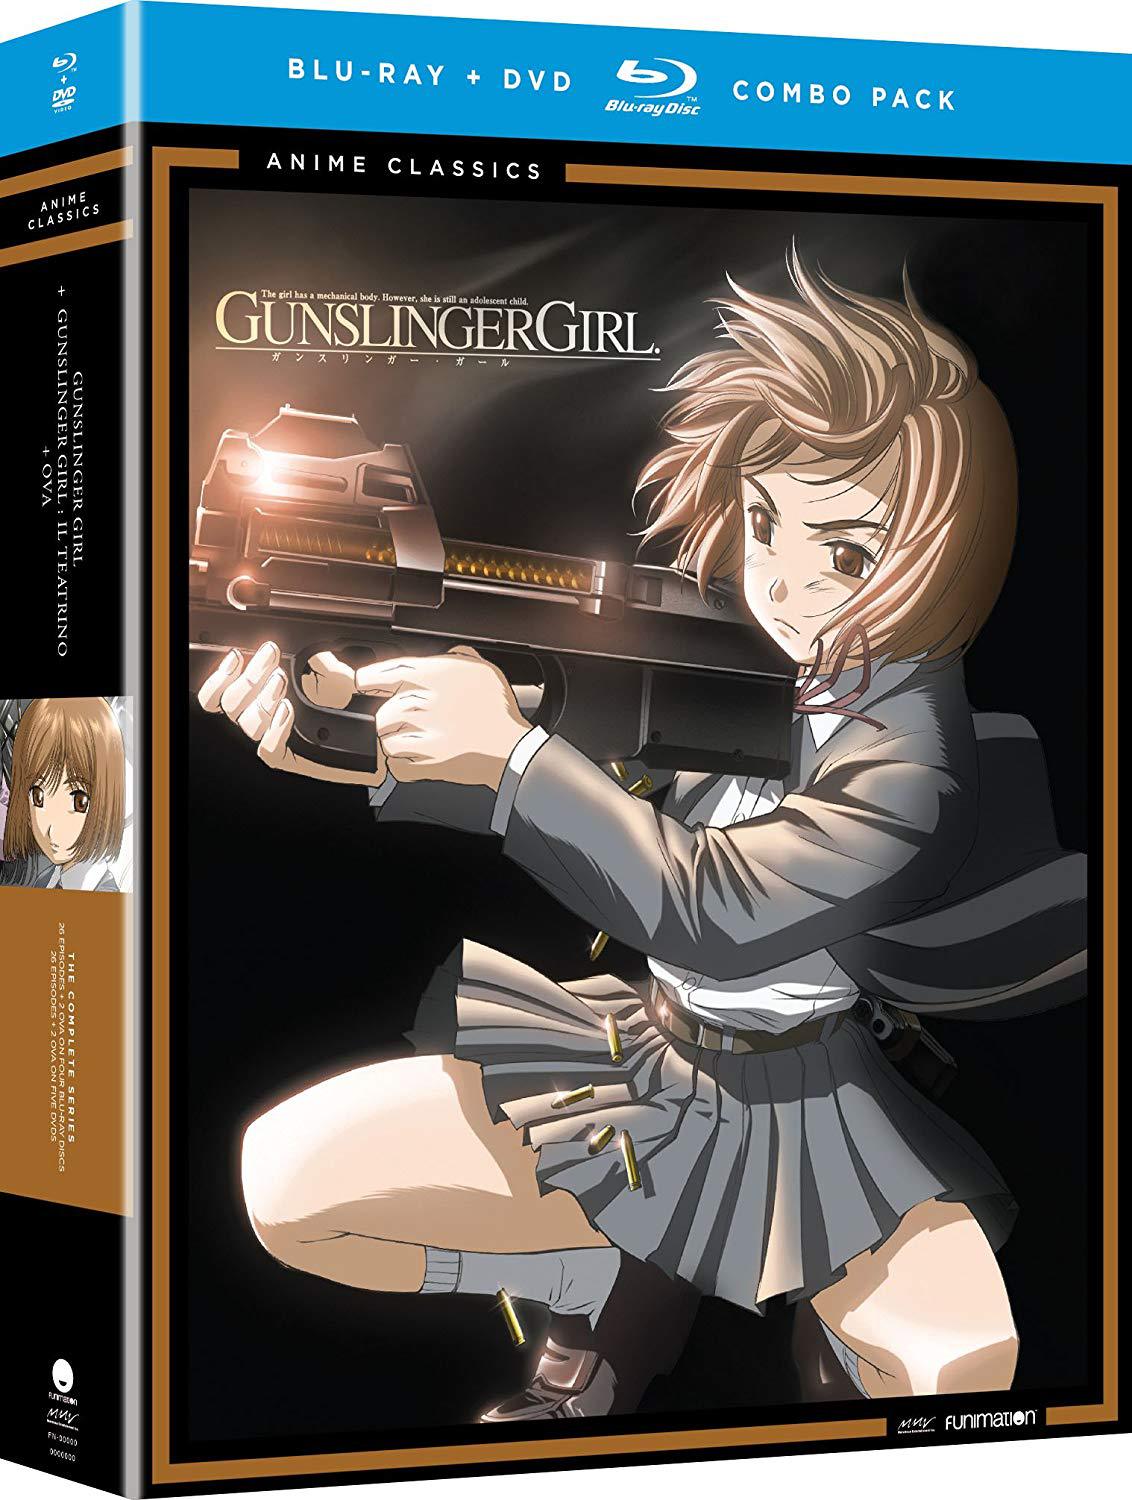 Gunslinger Girl 1 and 2